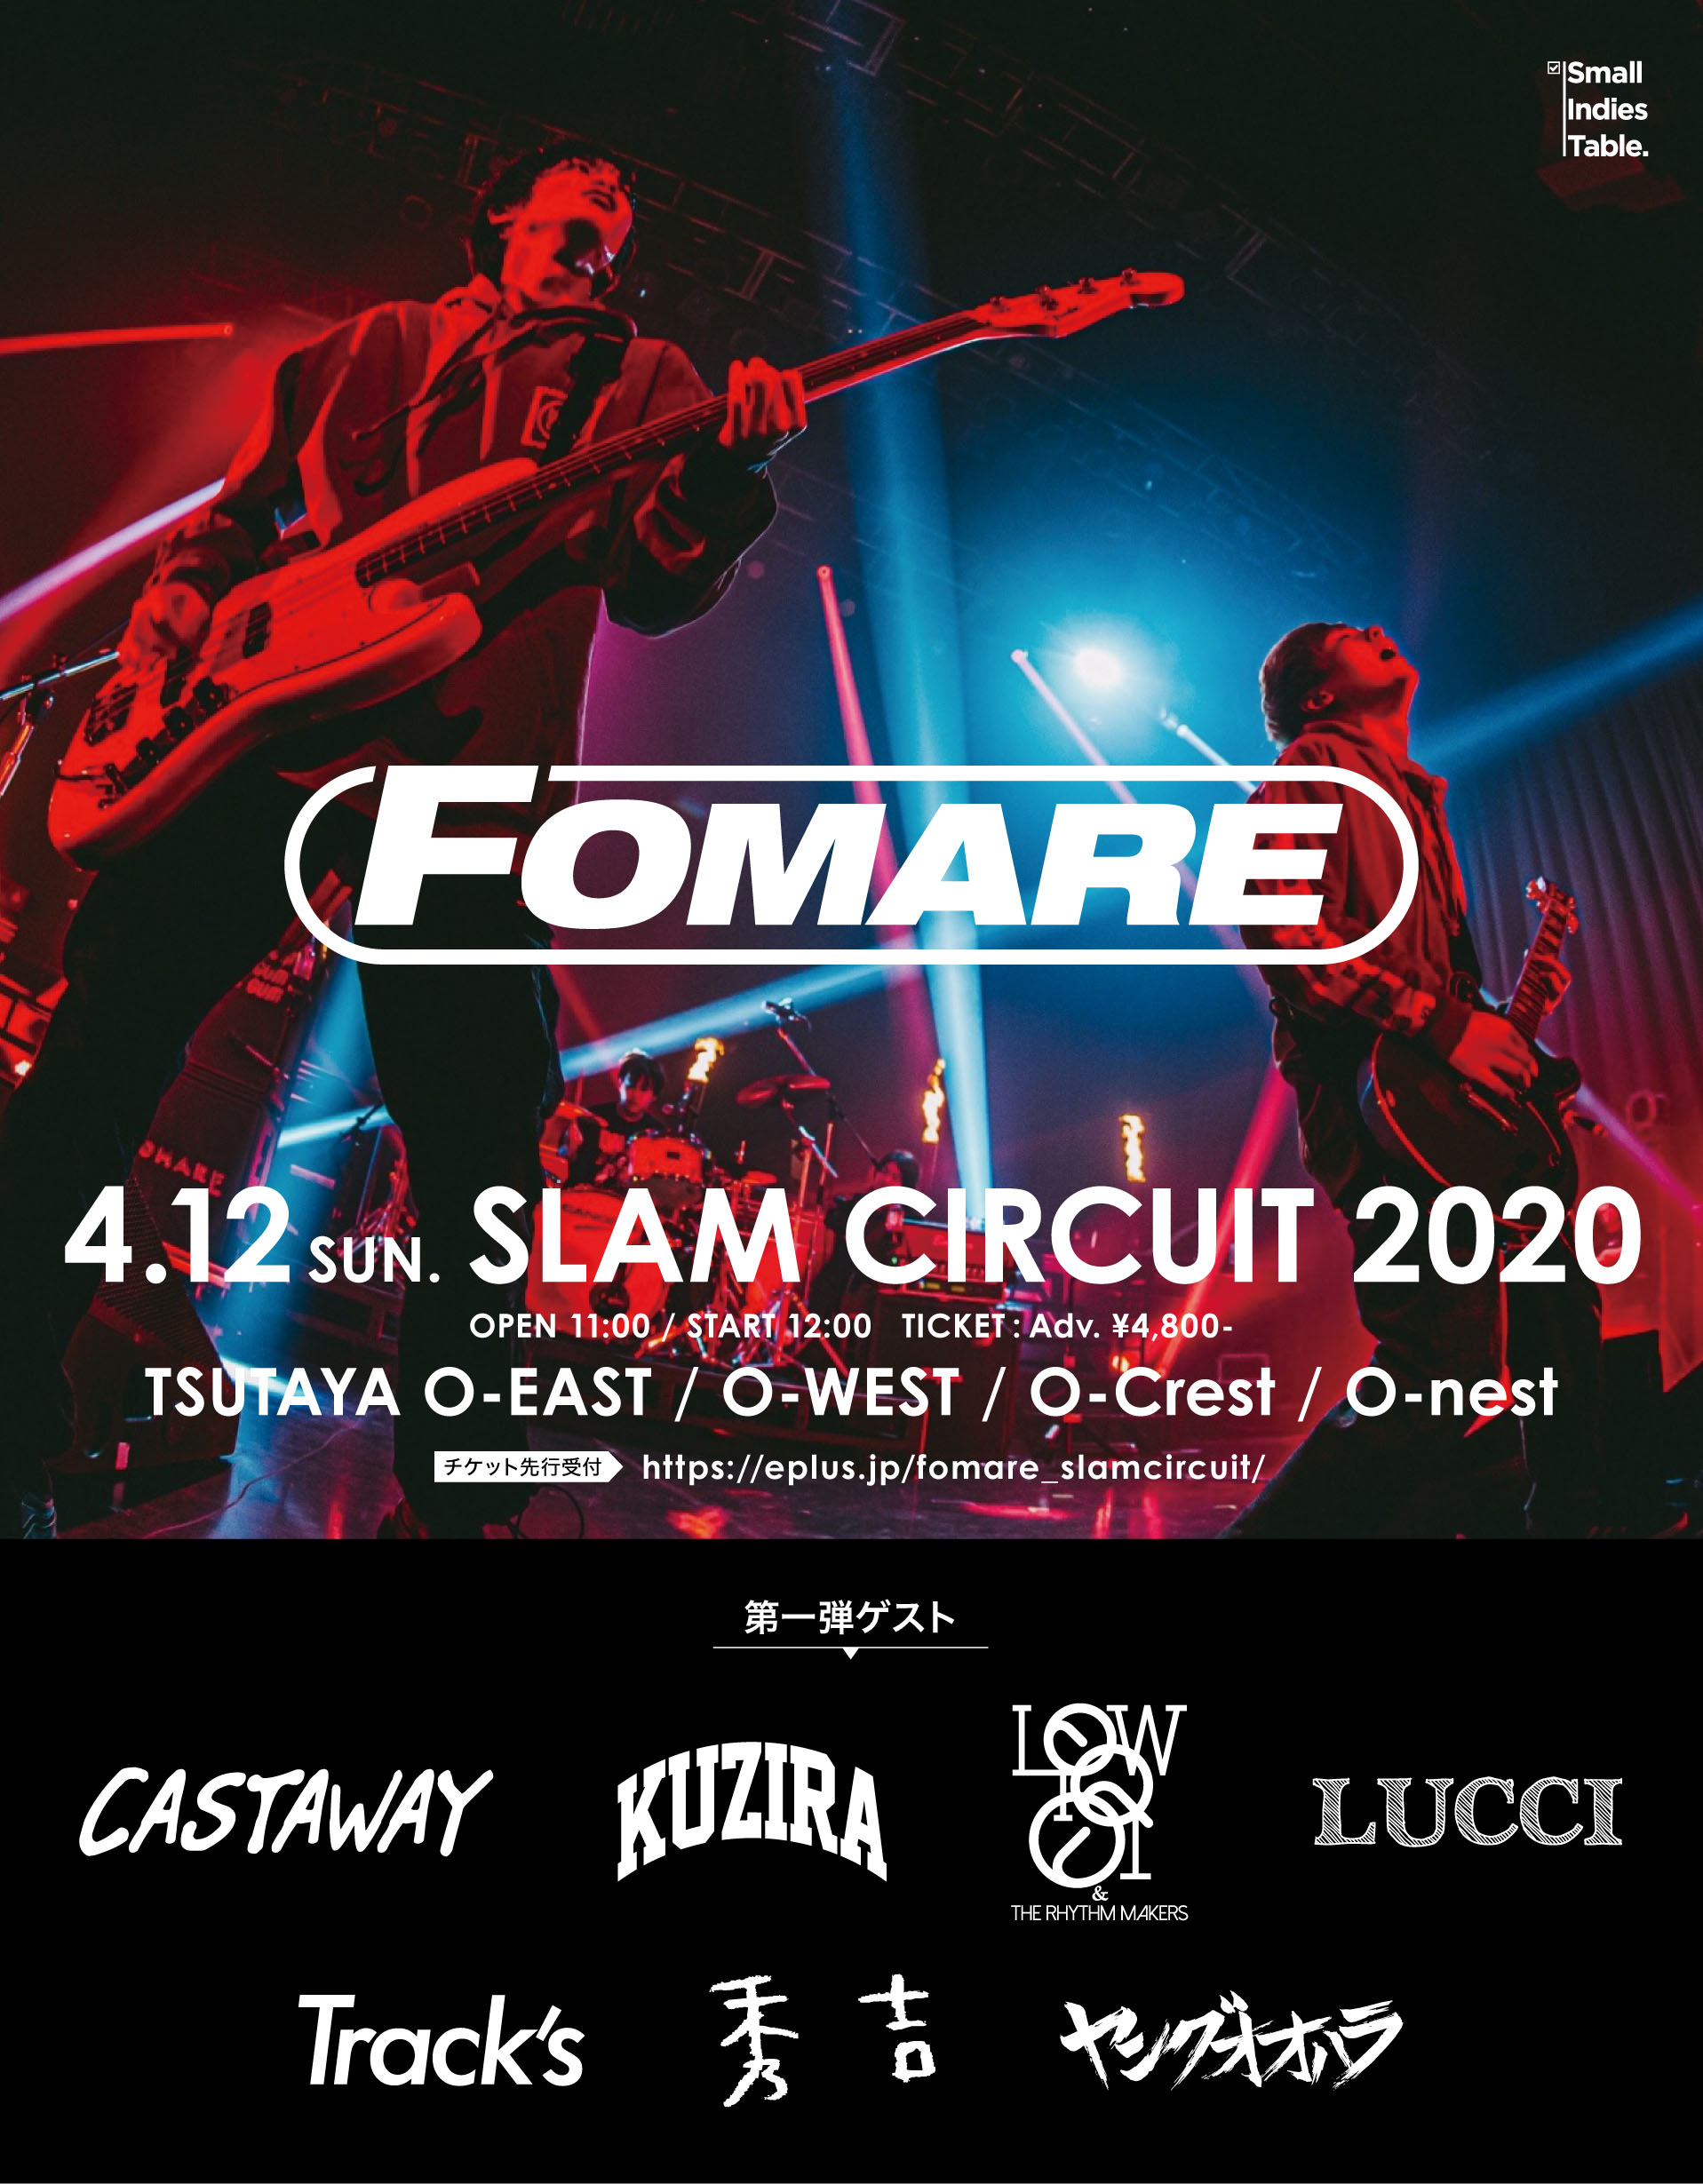 FOMARE SLAM CIRCUIT 2020